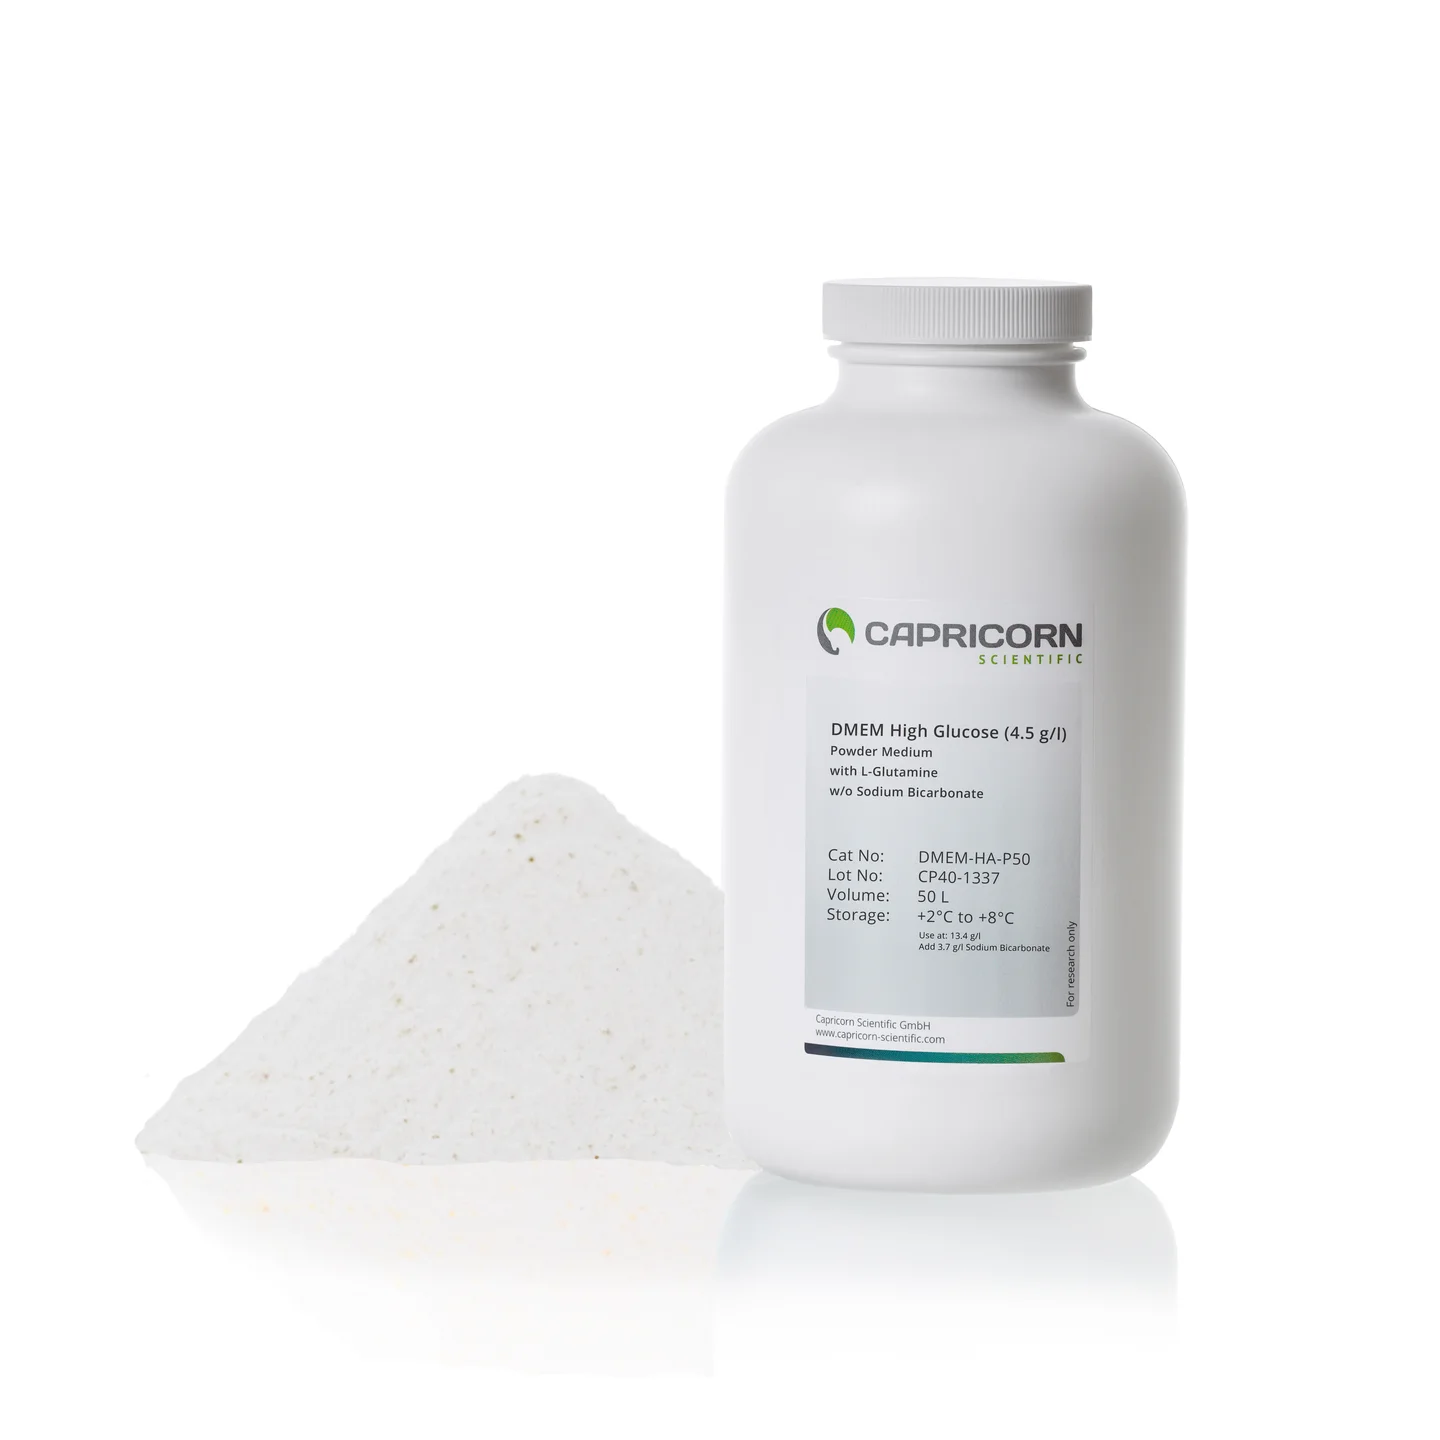 Môi trường dạng bột DMEM, Glucose nồng độ cao (4.5 g/l), chứa L-Glutamine, không chứa Sodium Bicarbonate